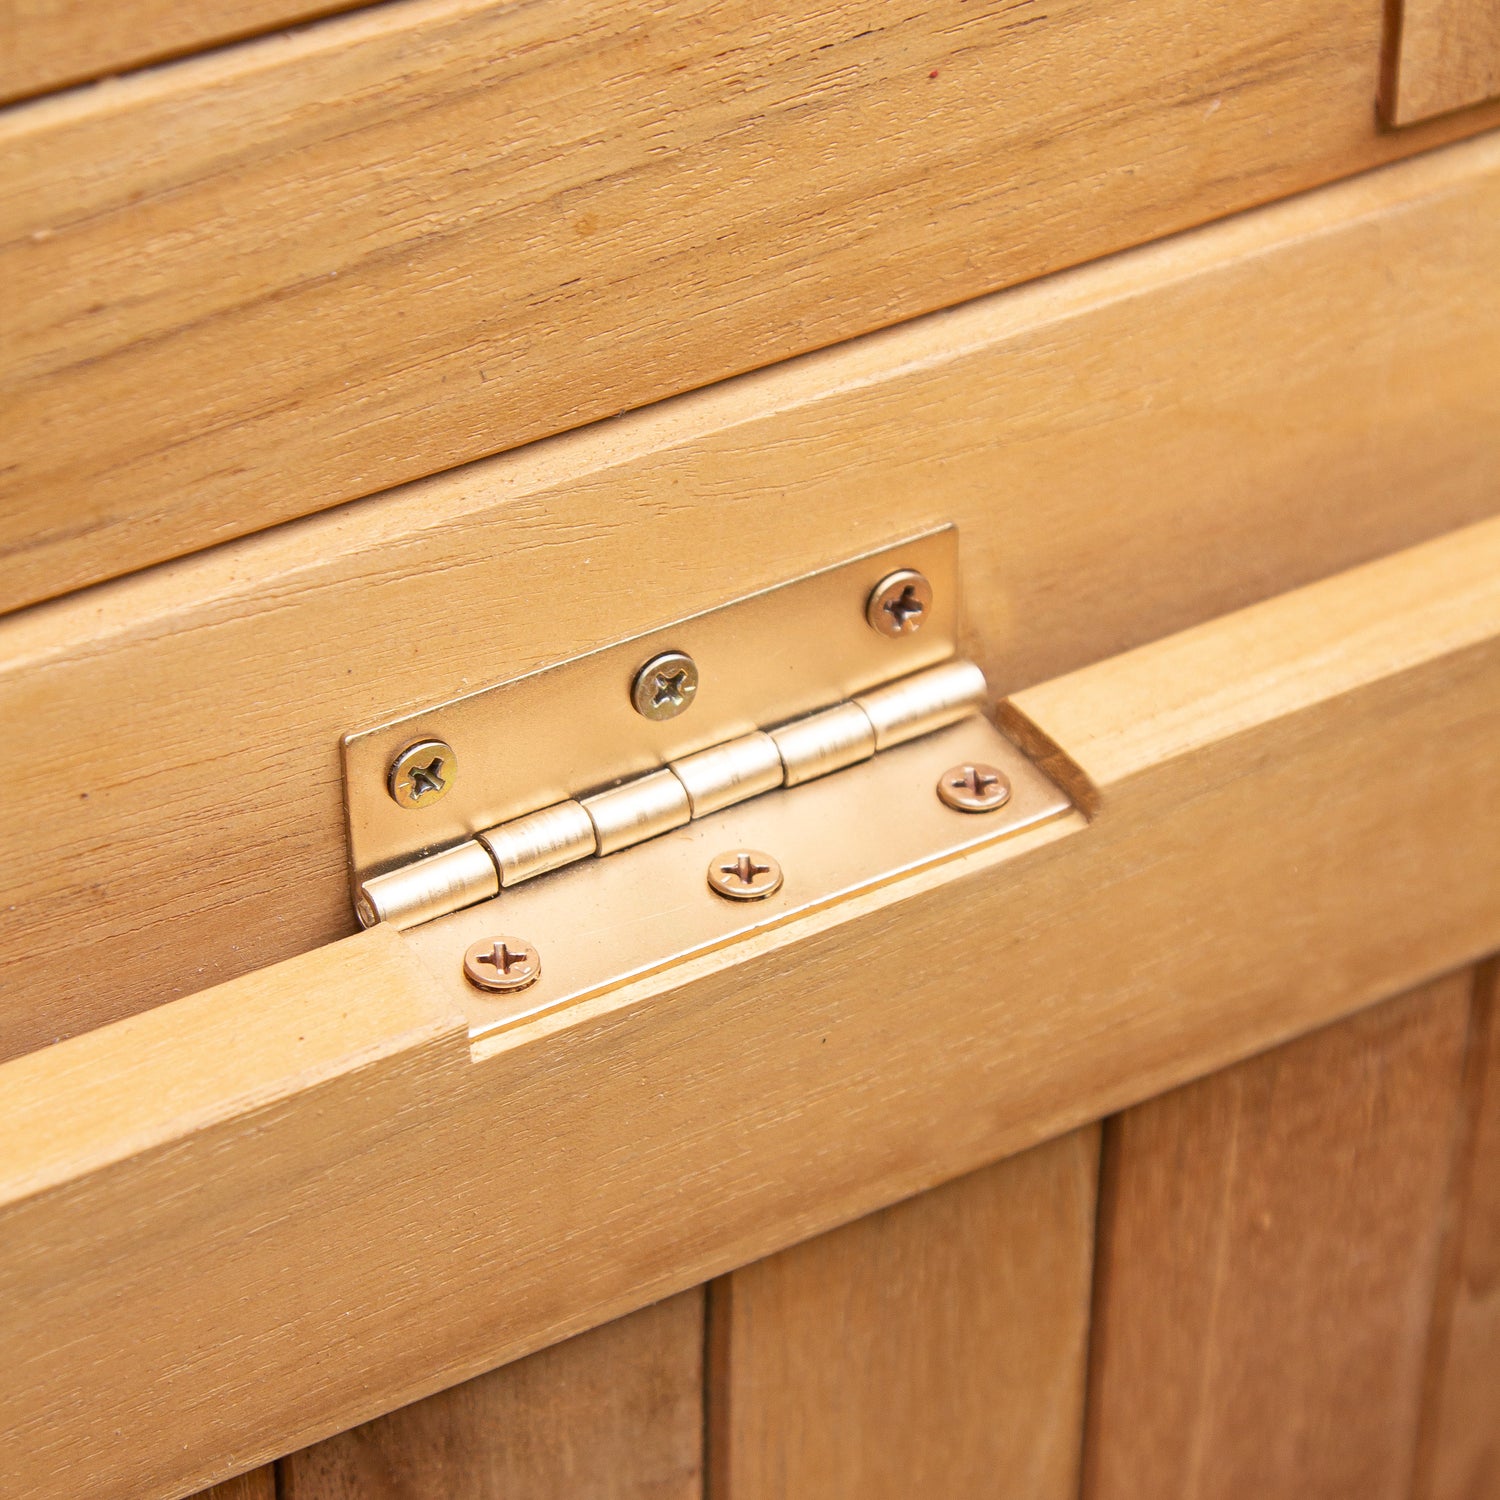 Richmond Teak Wood 48 Inch Outdoor Storage Deck Box